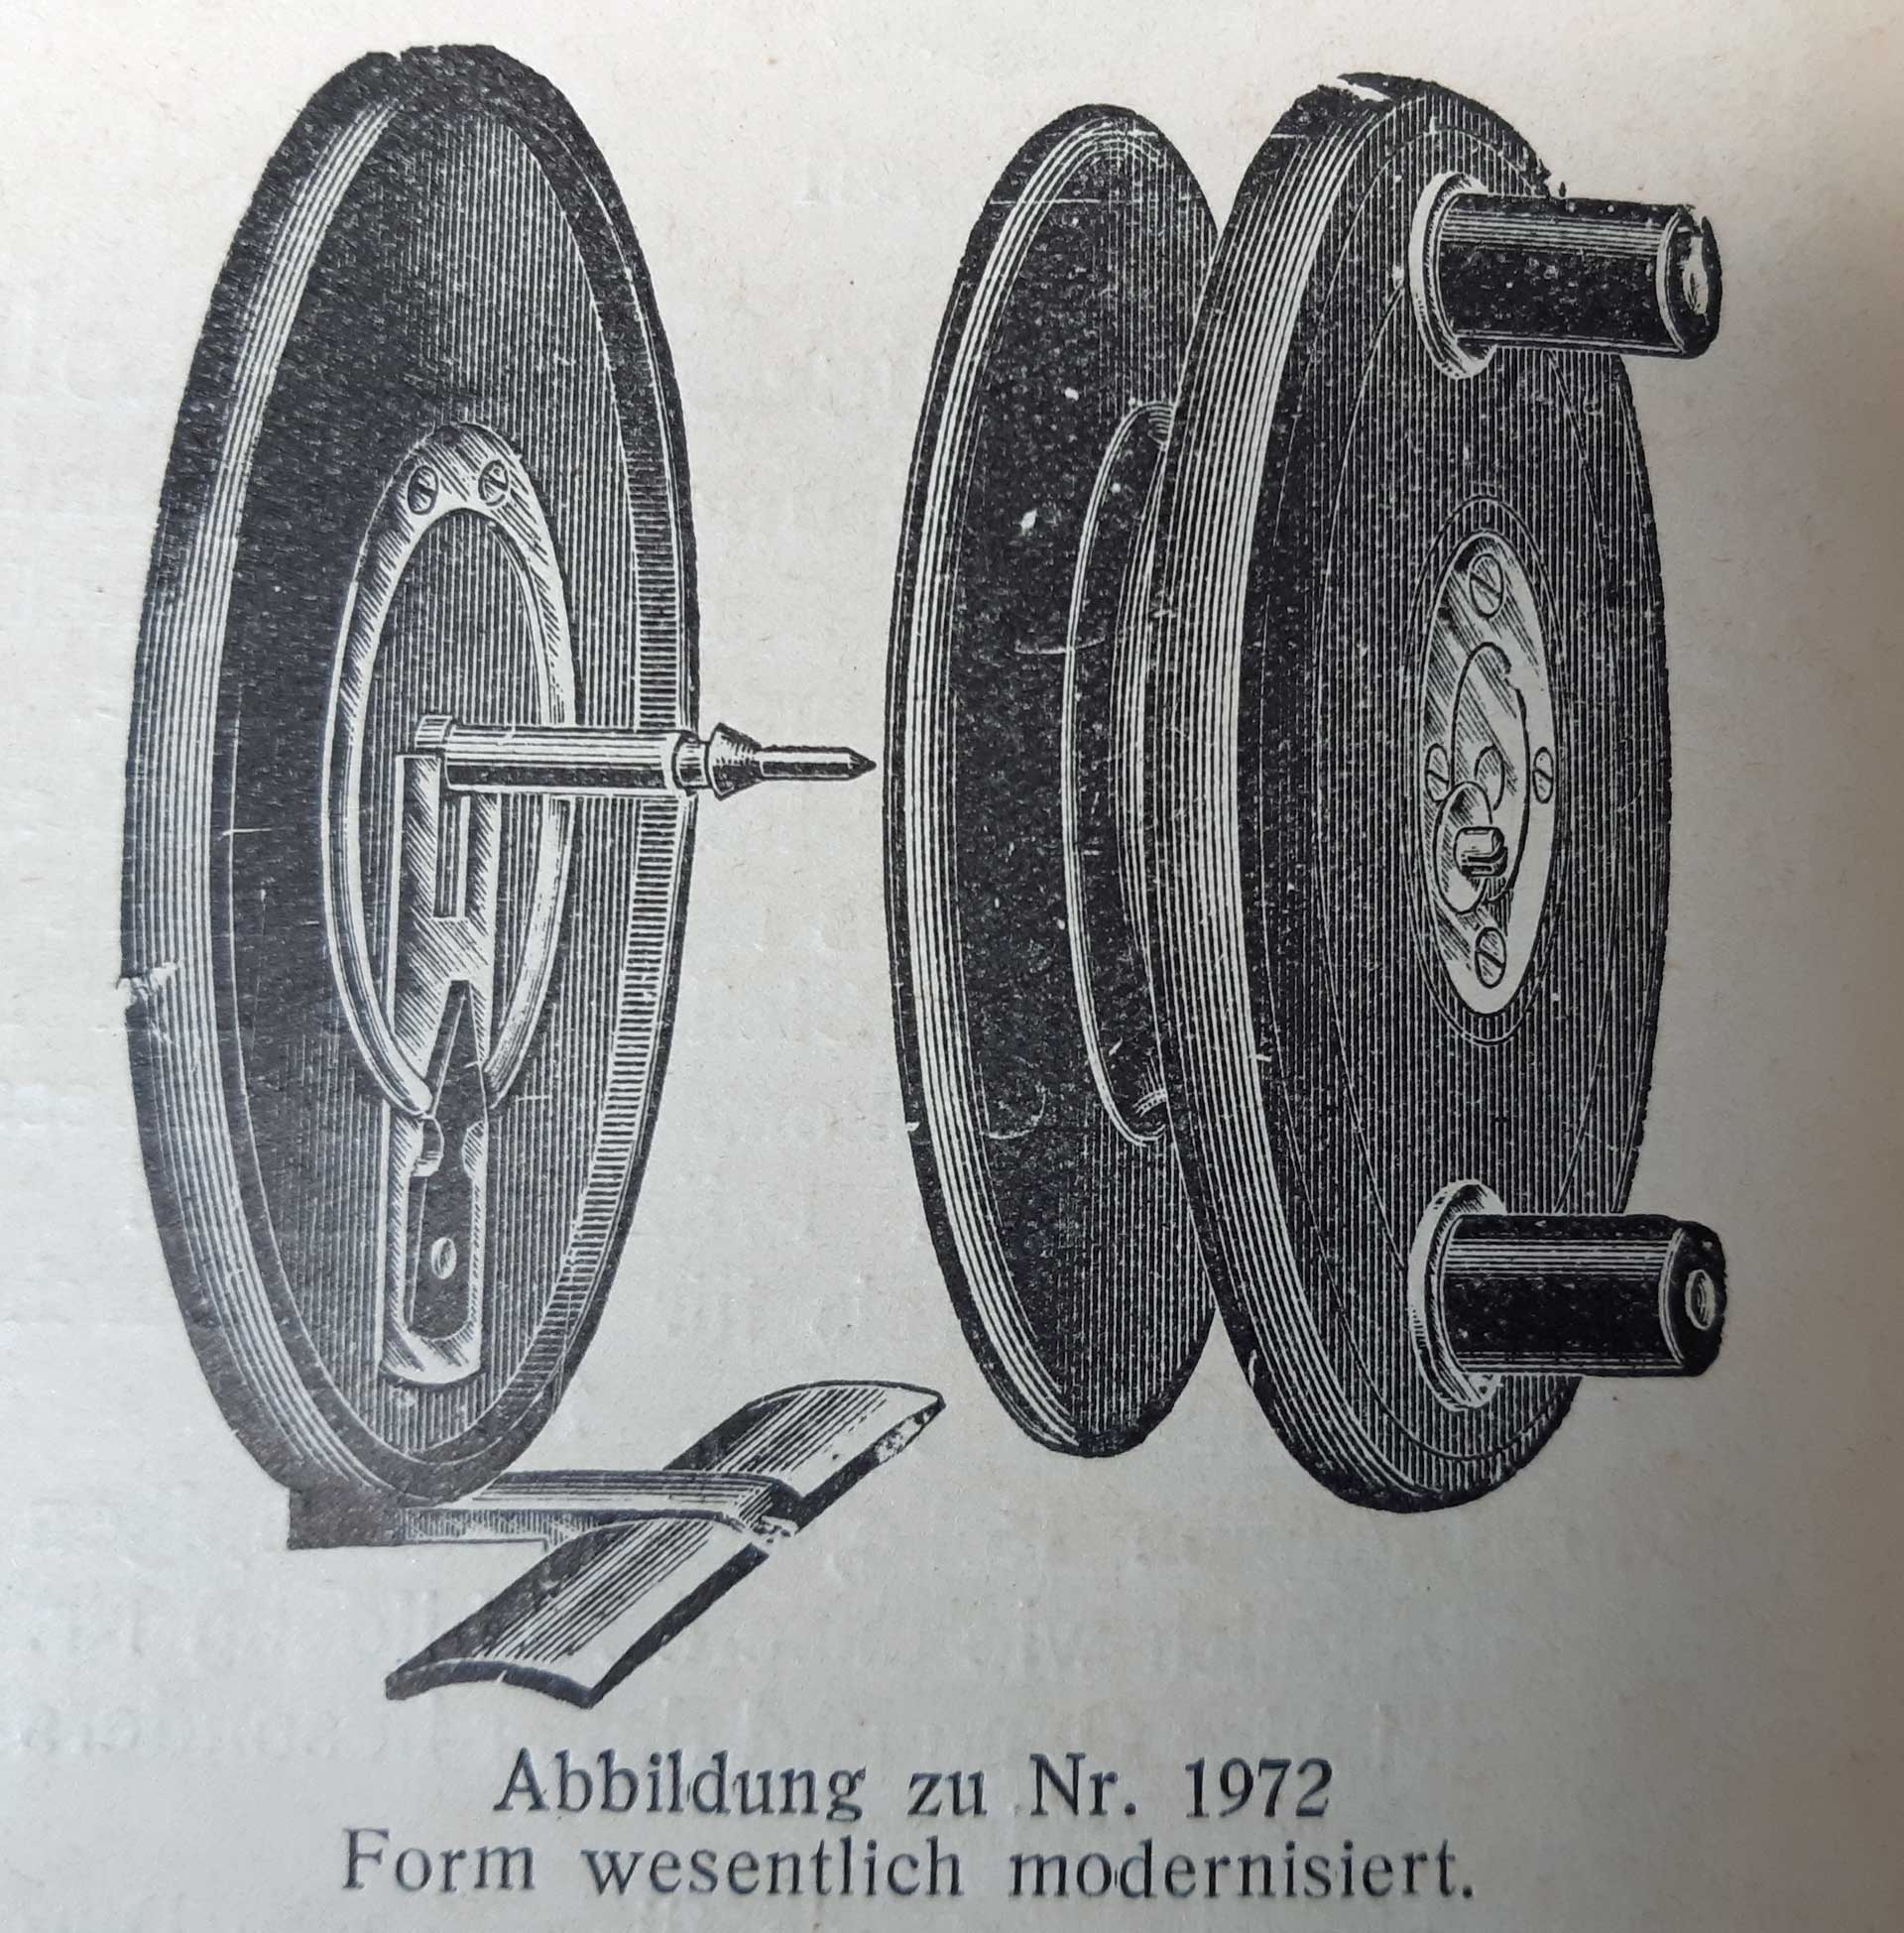 Vergleichbare Holzrolle mit Alurückwand der Spule und Slater-Aushebung im Noris-Katalog von 1934. Abweichungen zur Abbildung lassen sich durch den Zusatz "Form wesentlich modernisiert" erklären.